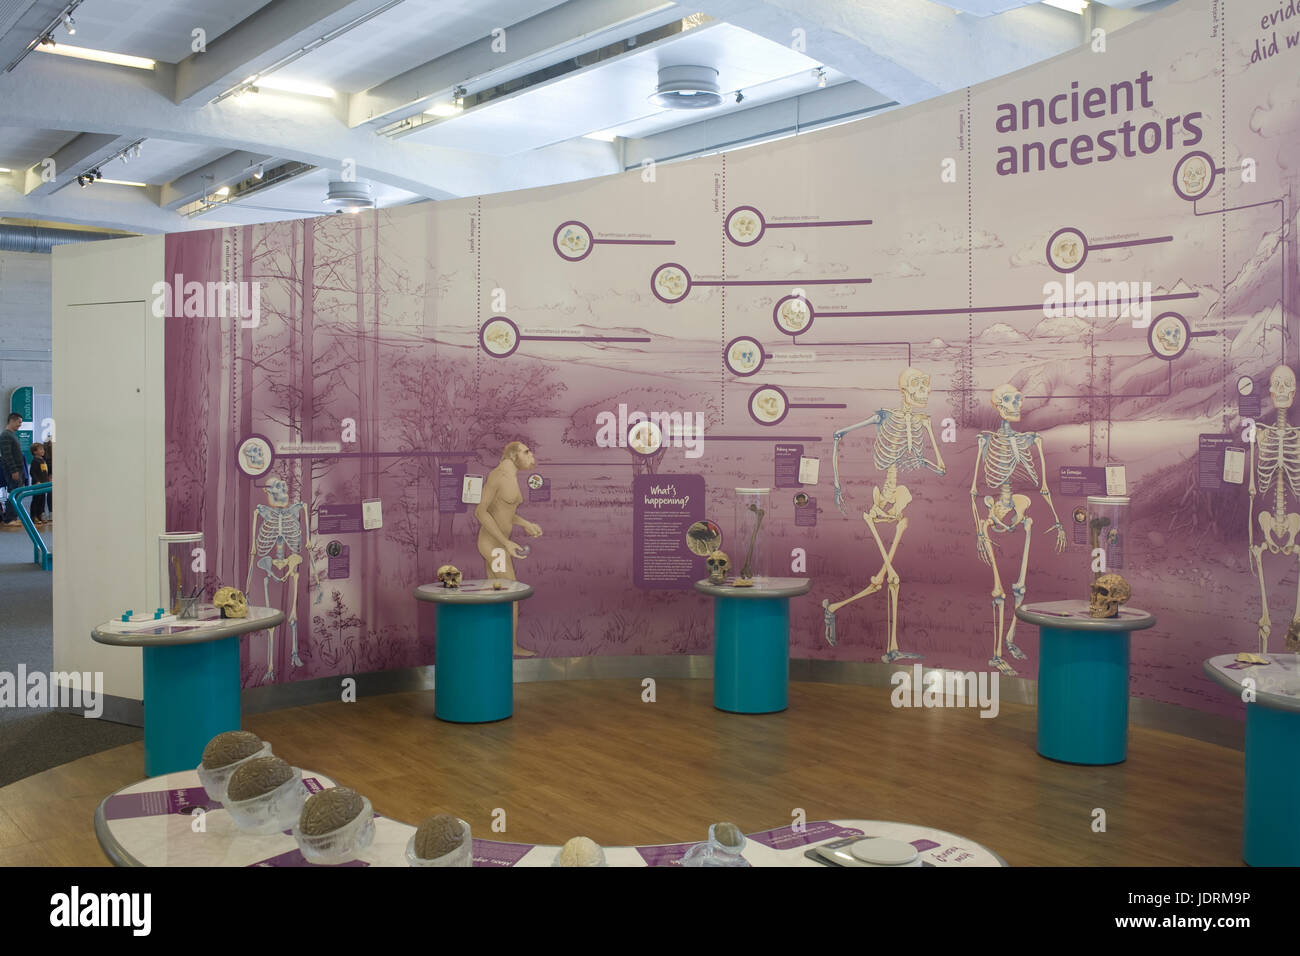 Affichage des ancêtres anciens de la vie humaine dans 'Bristol' science museum Banque D'Images